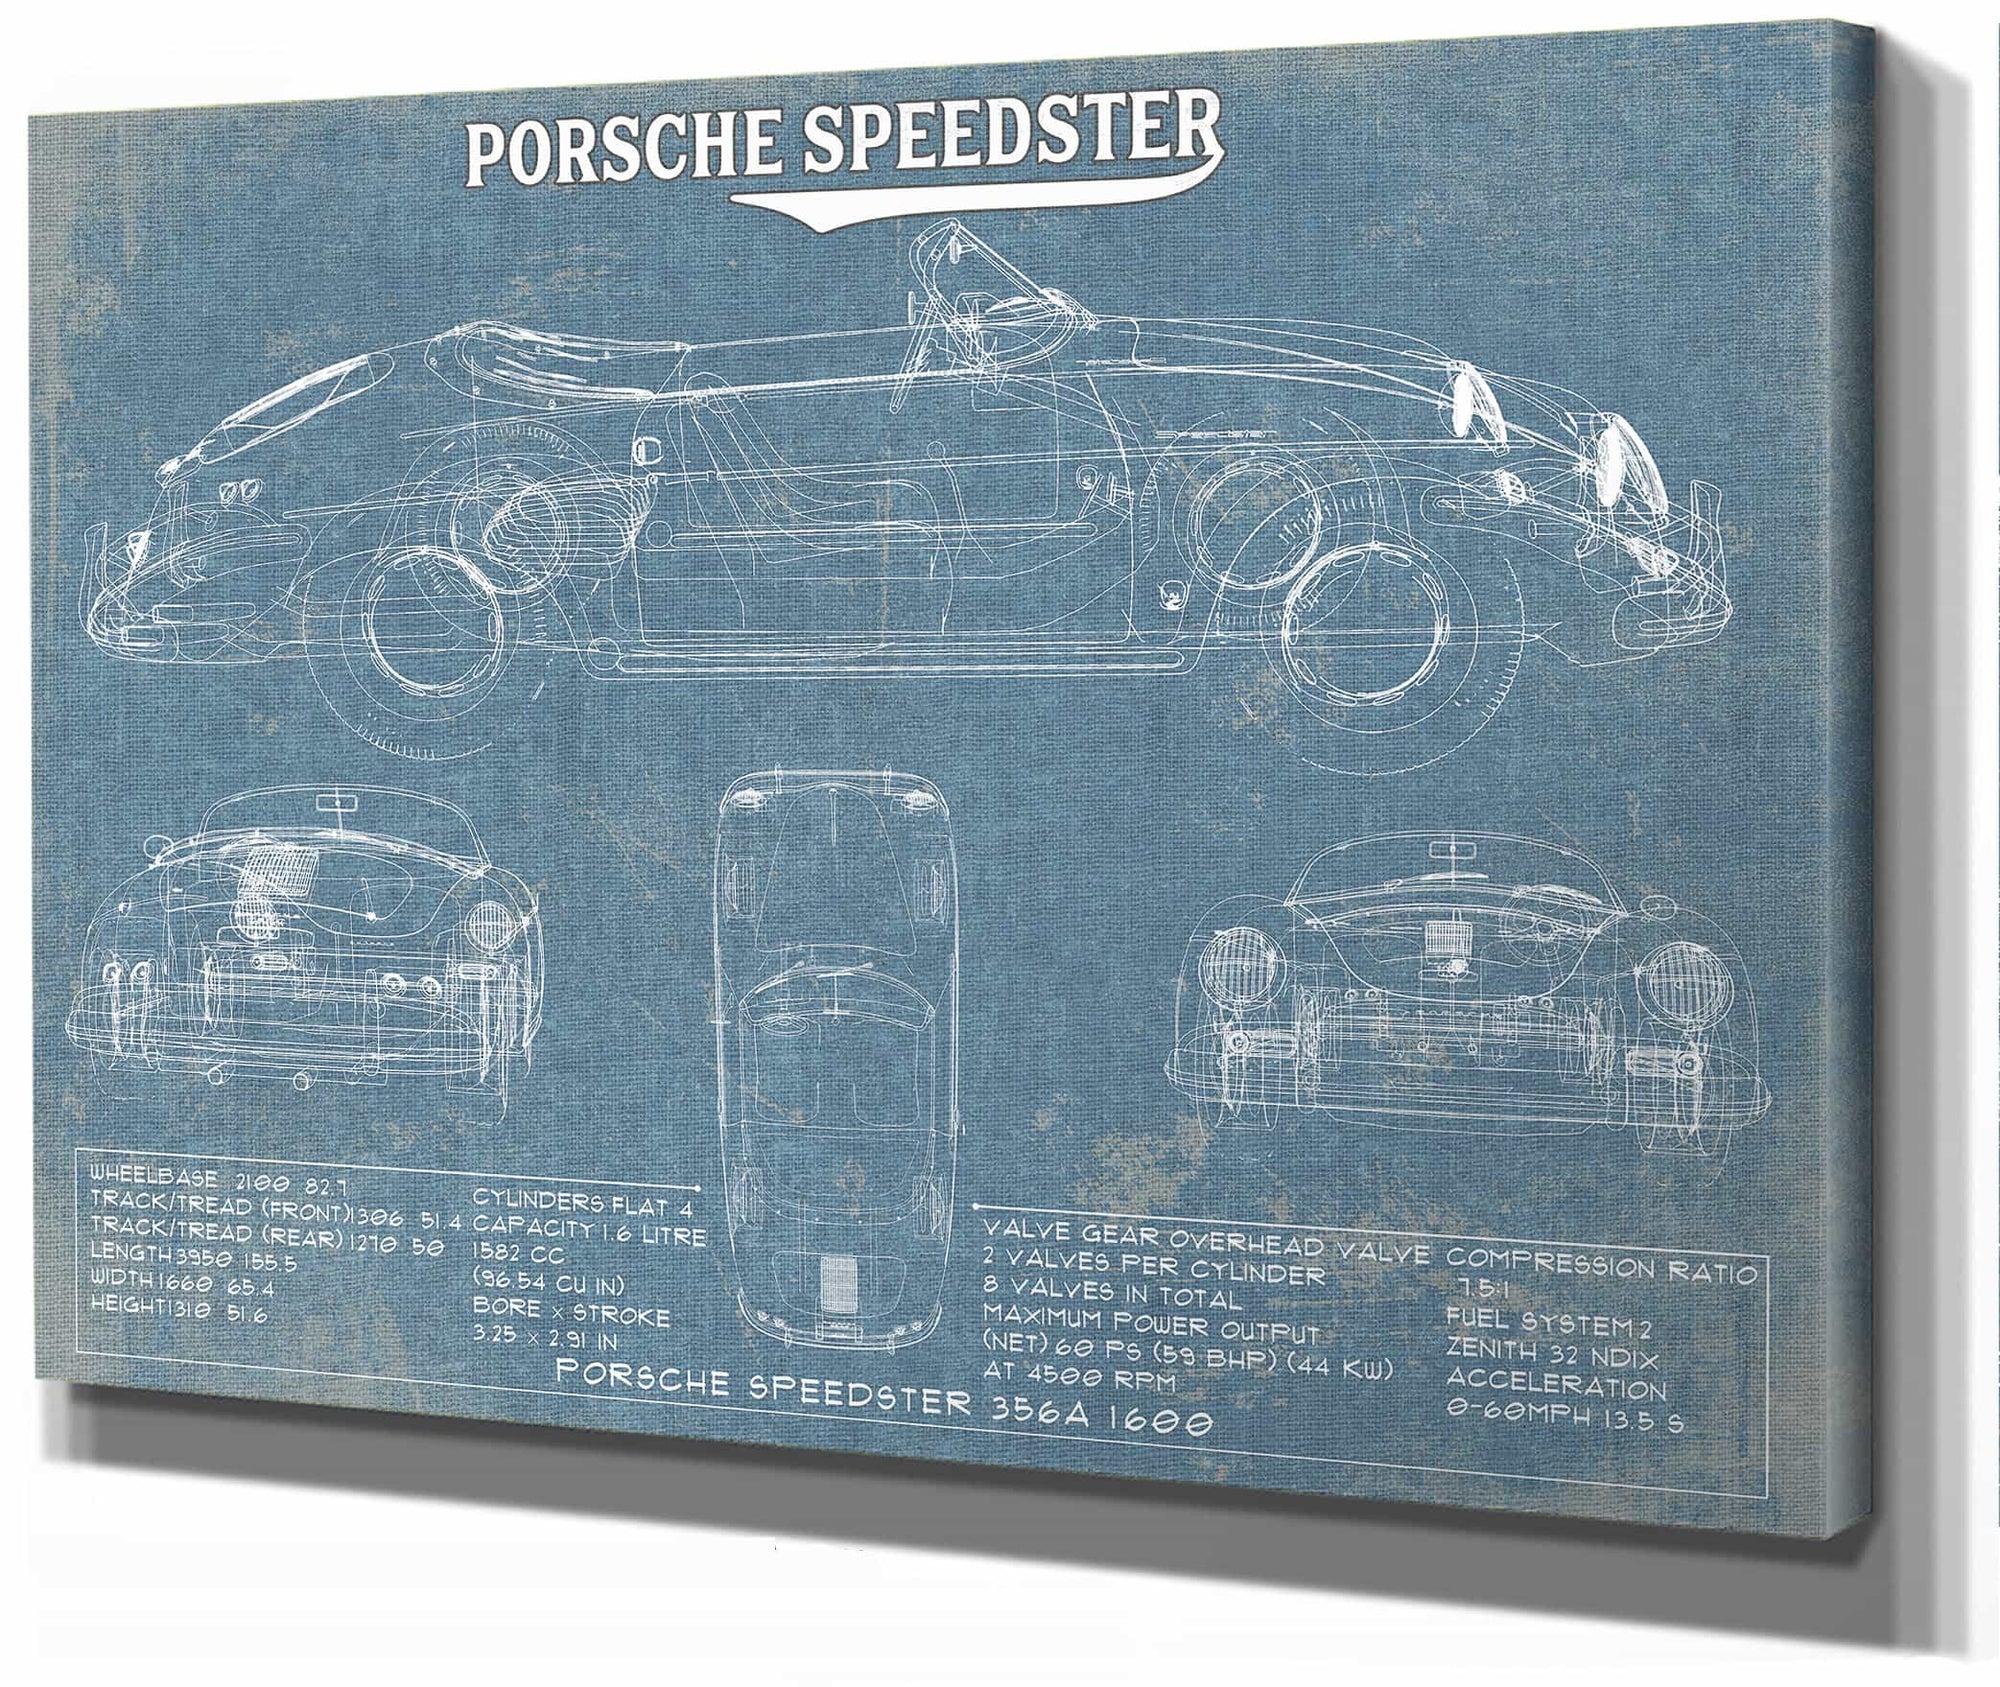 Porsche Speedster 356A 1600 - Vintage Auto Print